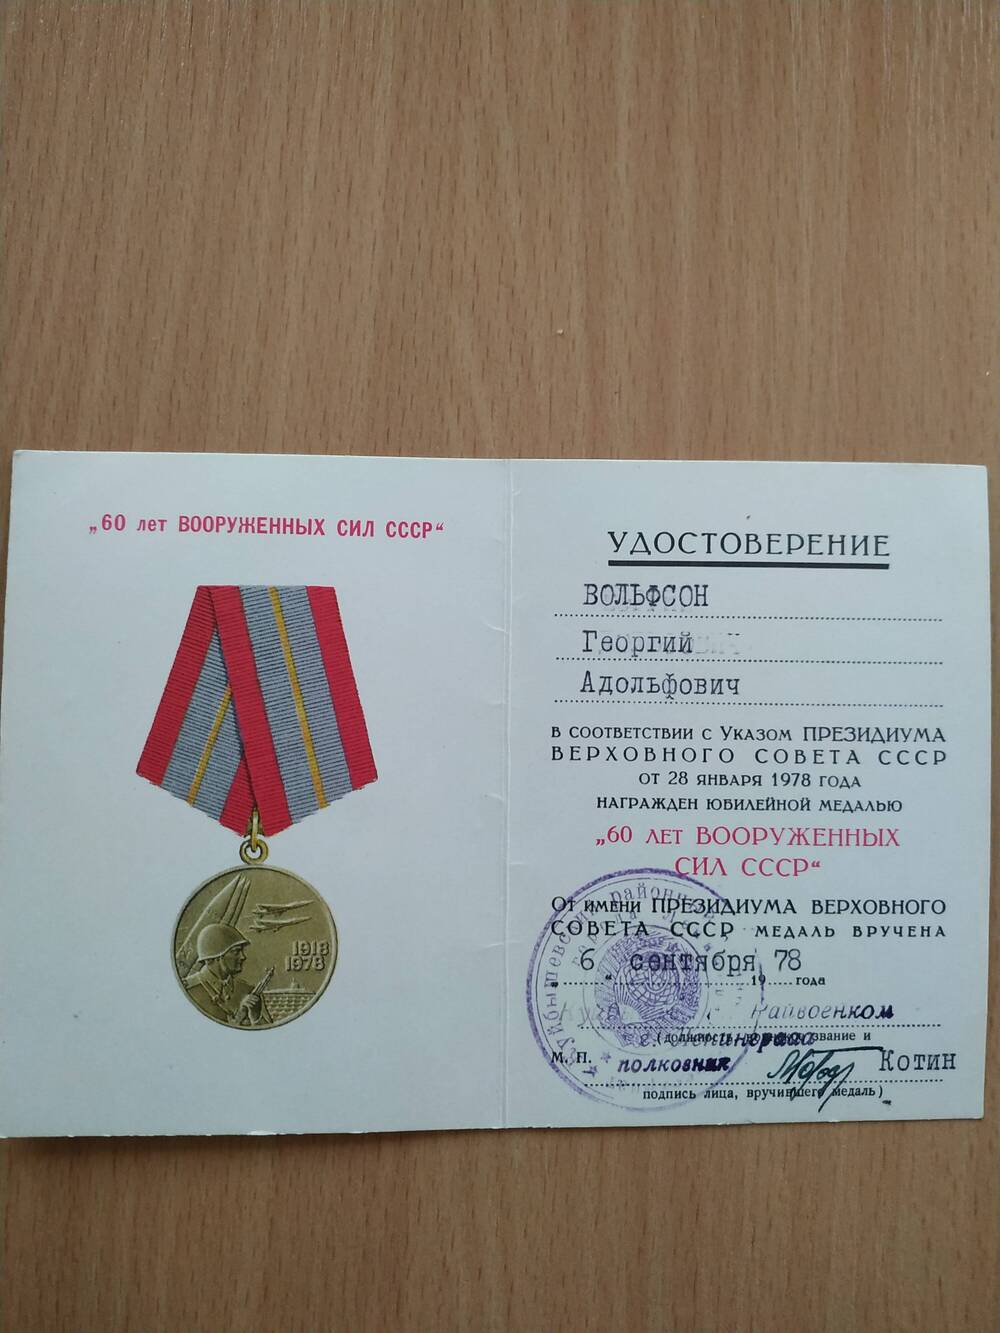 Удостоверение к юбилейной медали «60 лет вооруженных сил СССР» Вольфсона Г.А., от 06.09.1978 г.